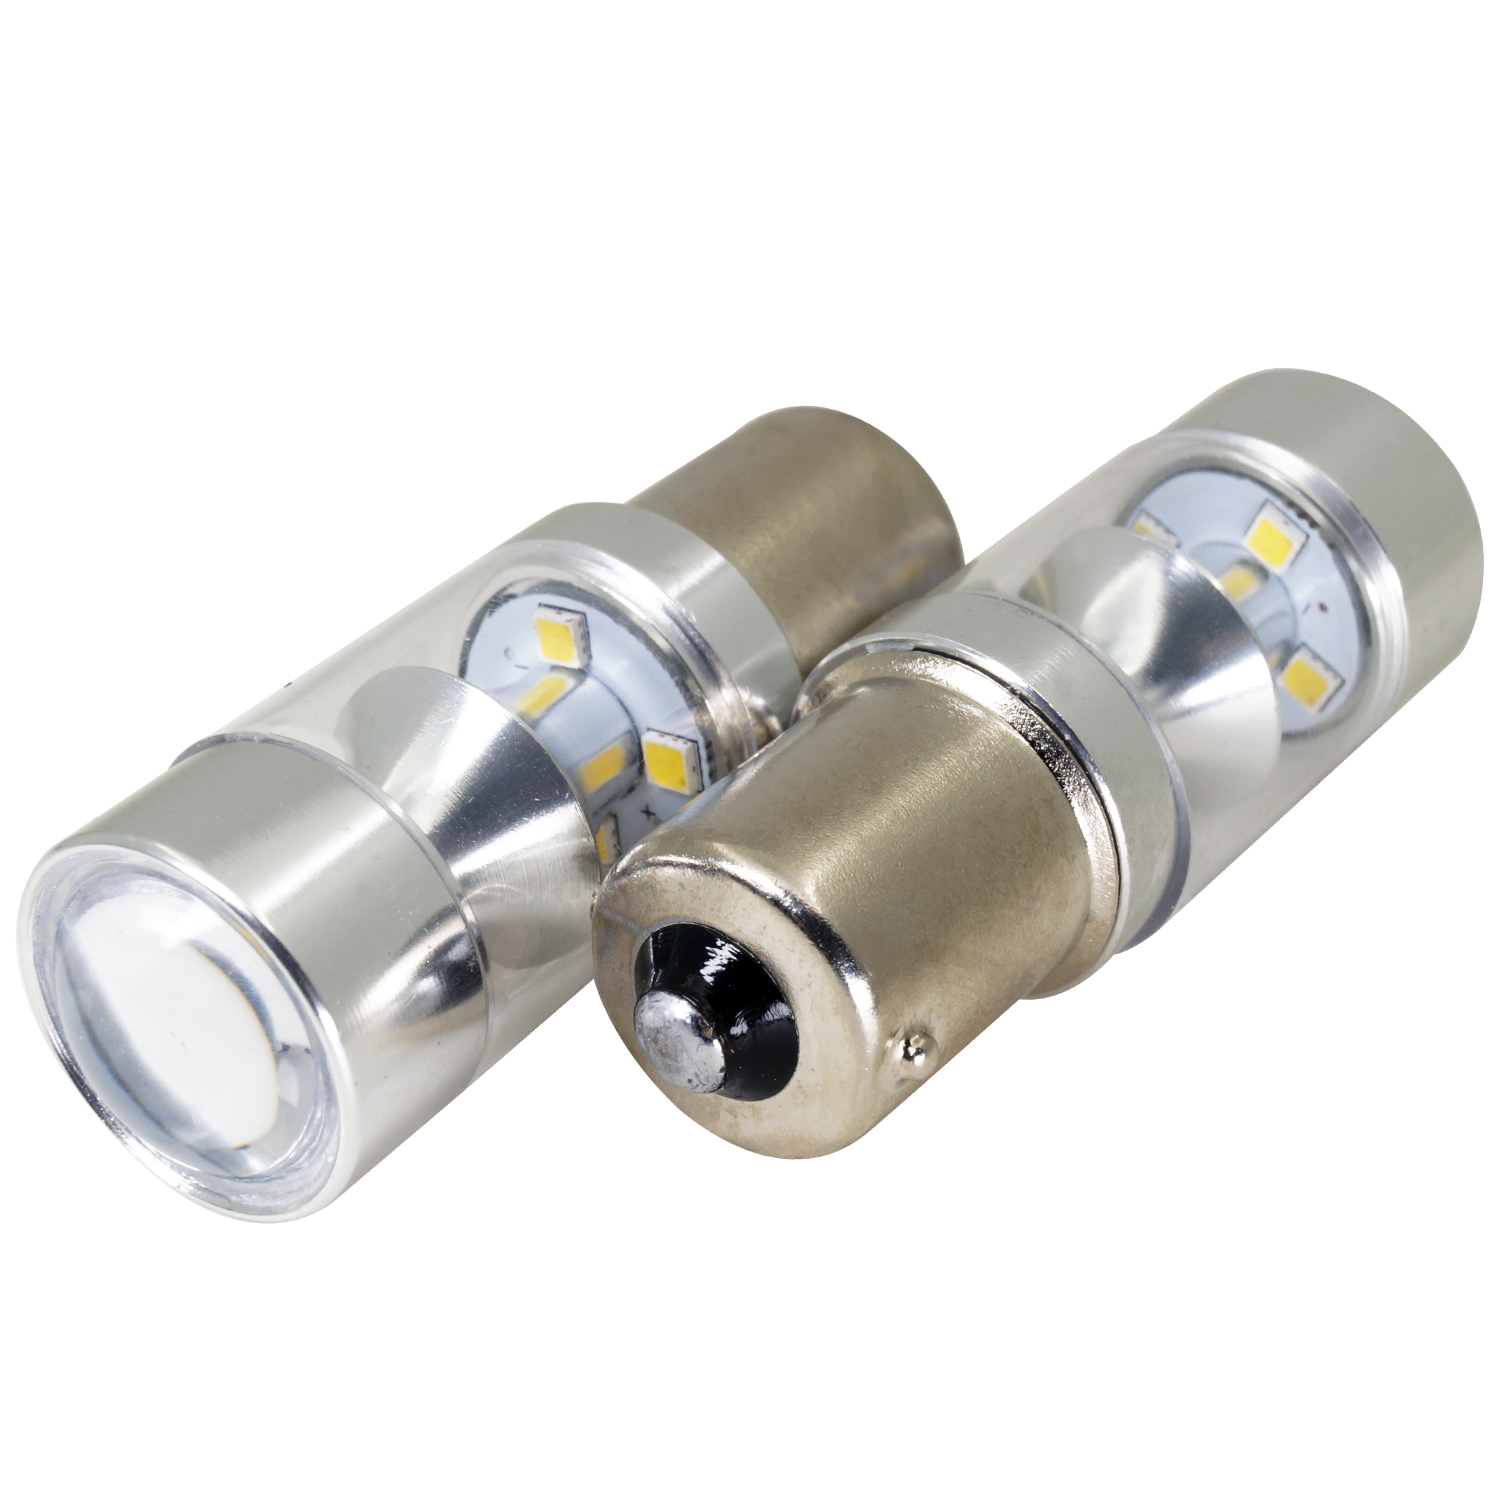 T20 Luci a LED di lumen estremamente luminose per il bulbo del segnale di svolta